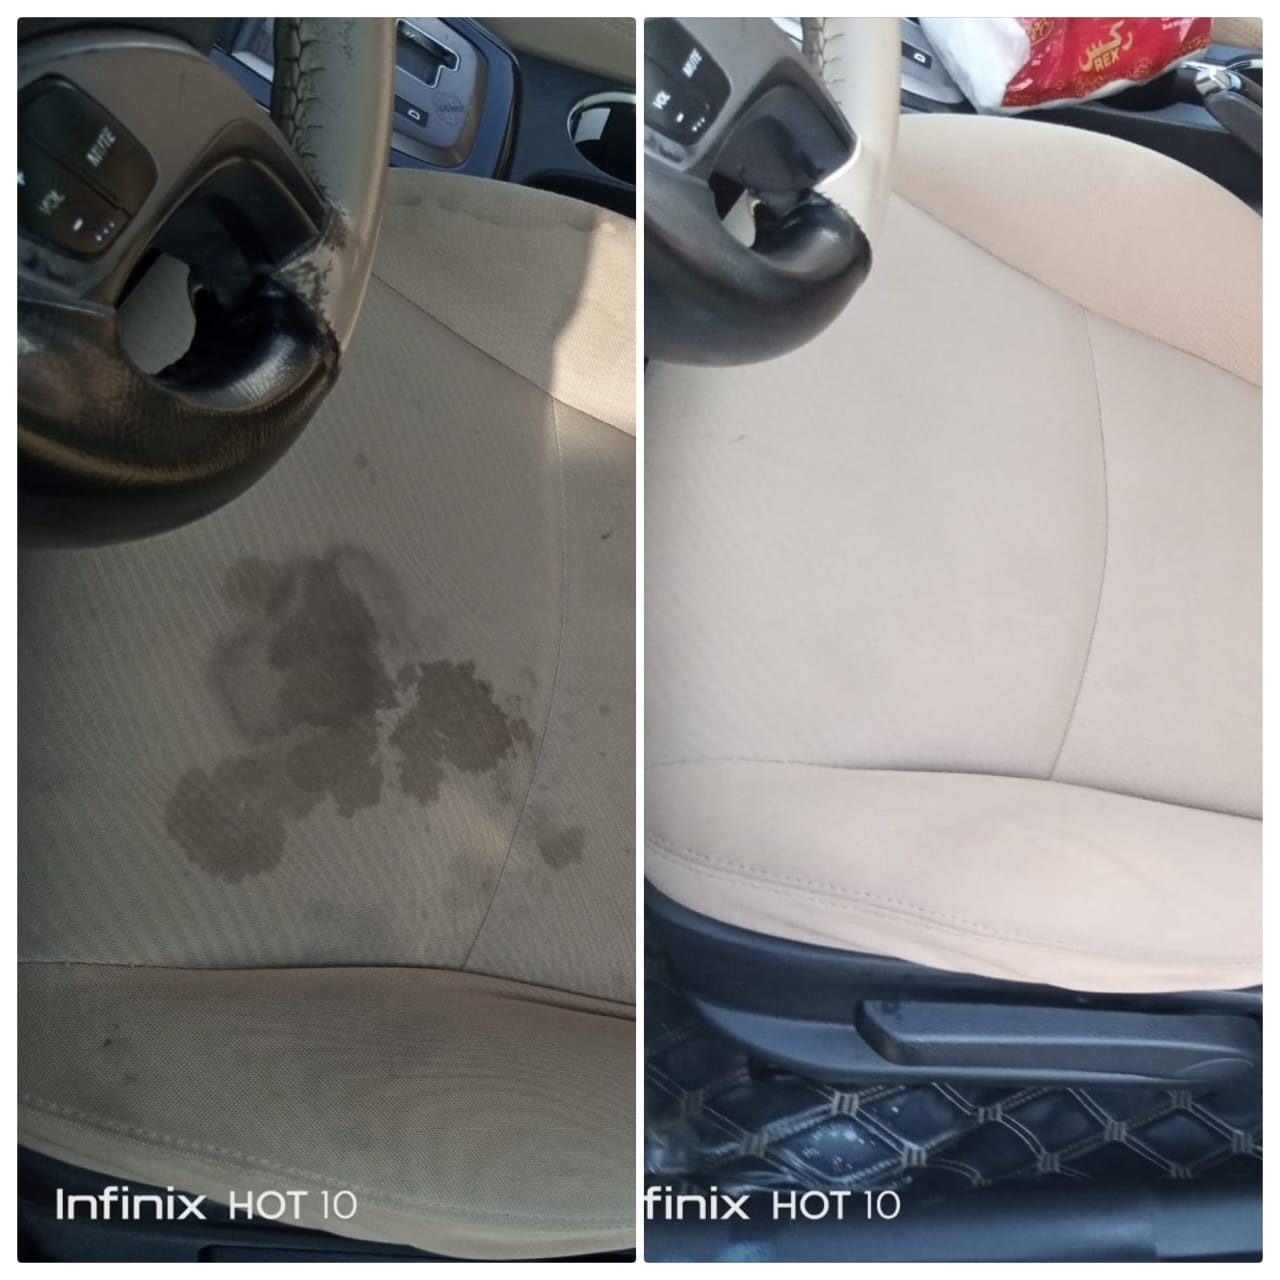 هل يؤثر غسيل السيارة من الداخل بالبخار؟ - تلميع وتنظيف المقاعد والأقمشة